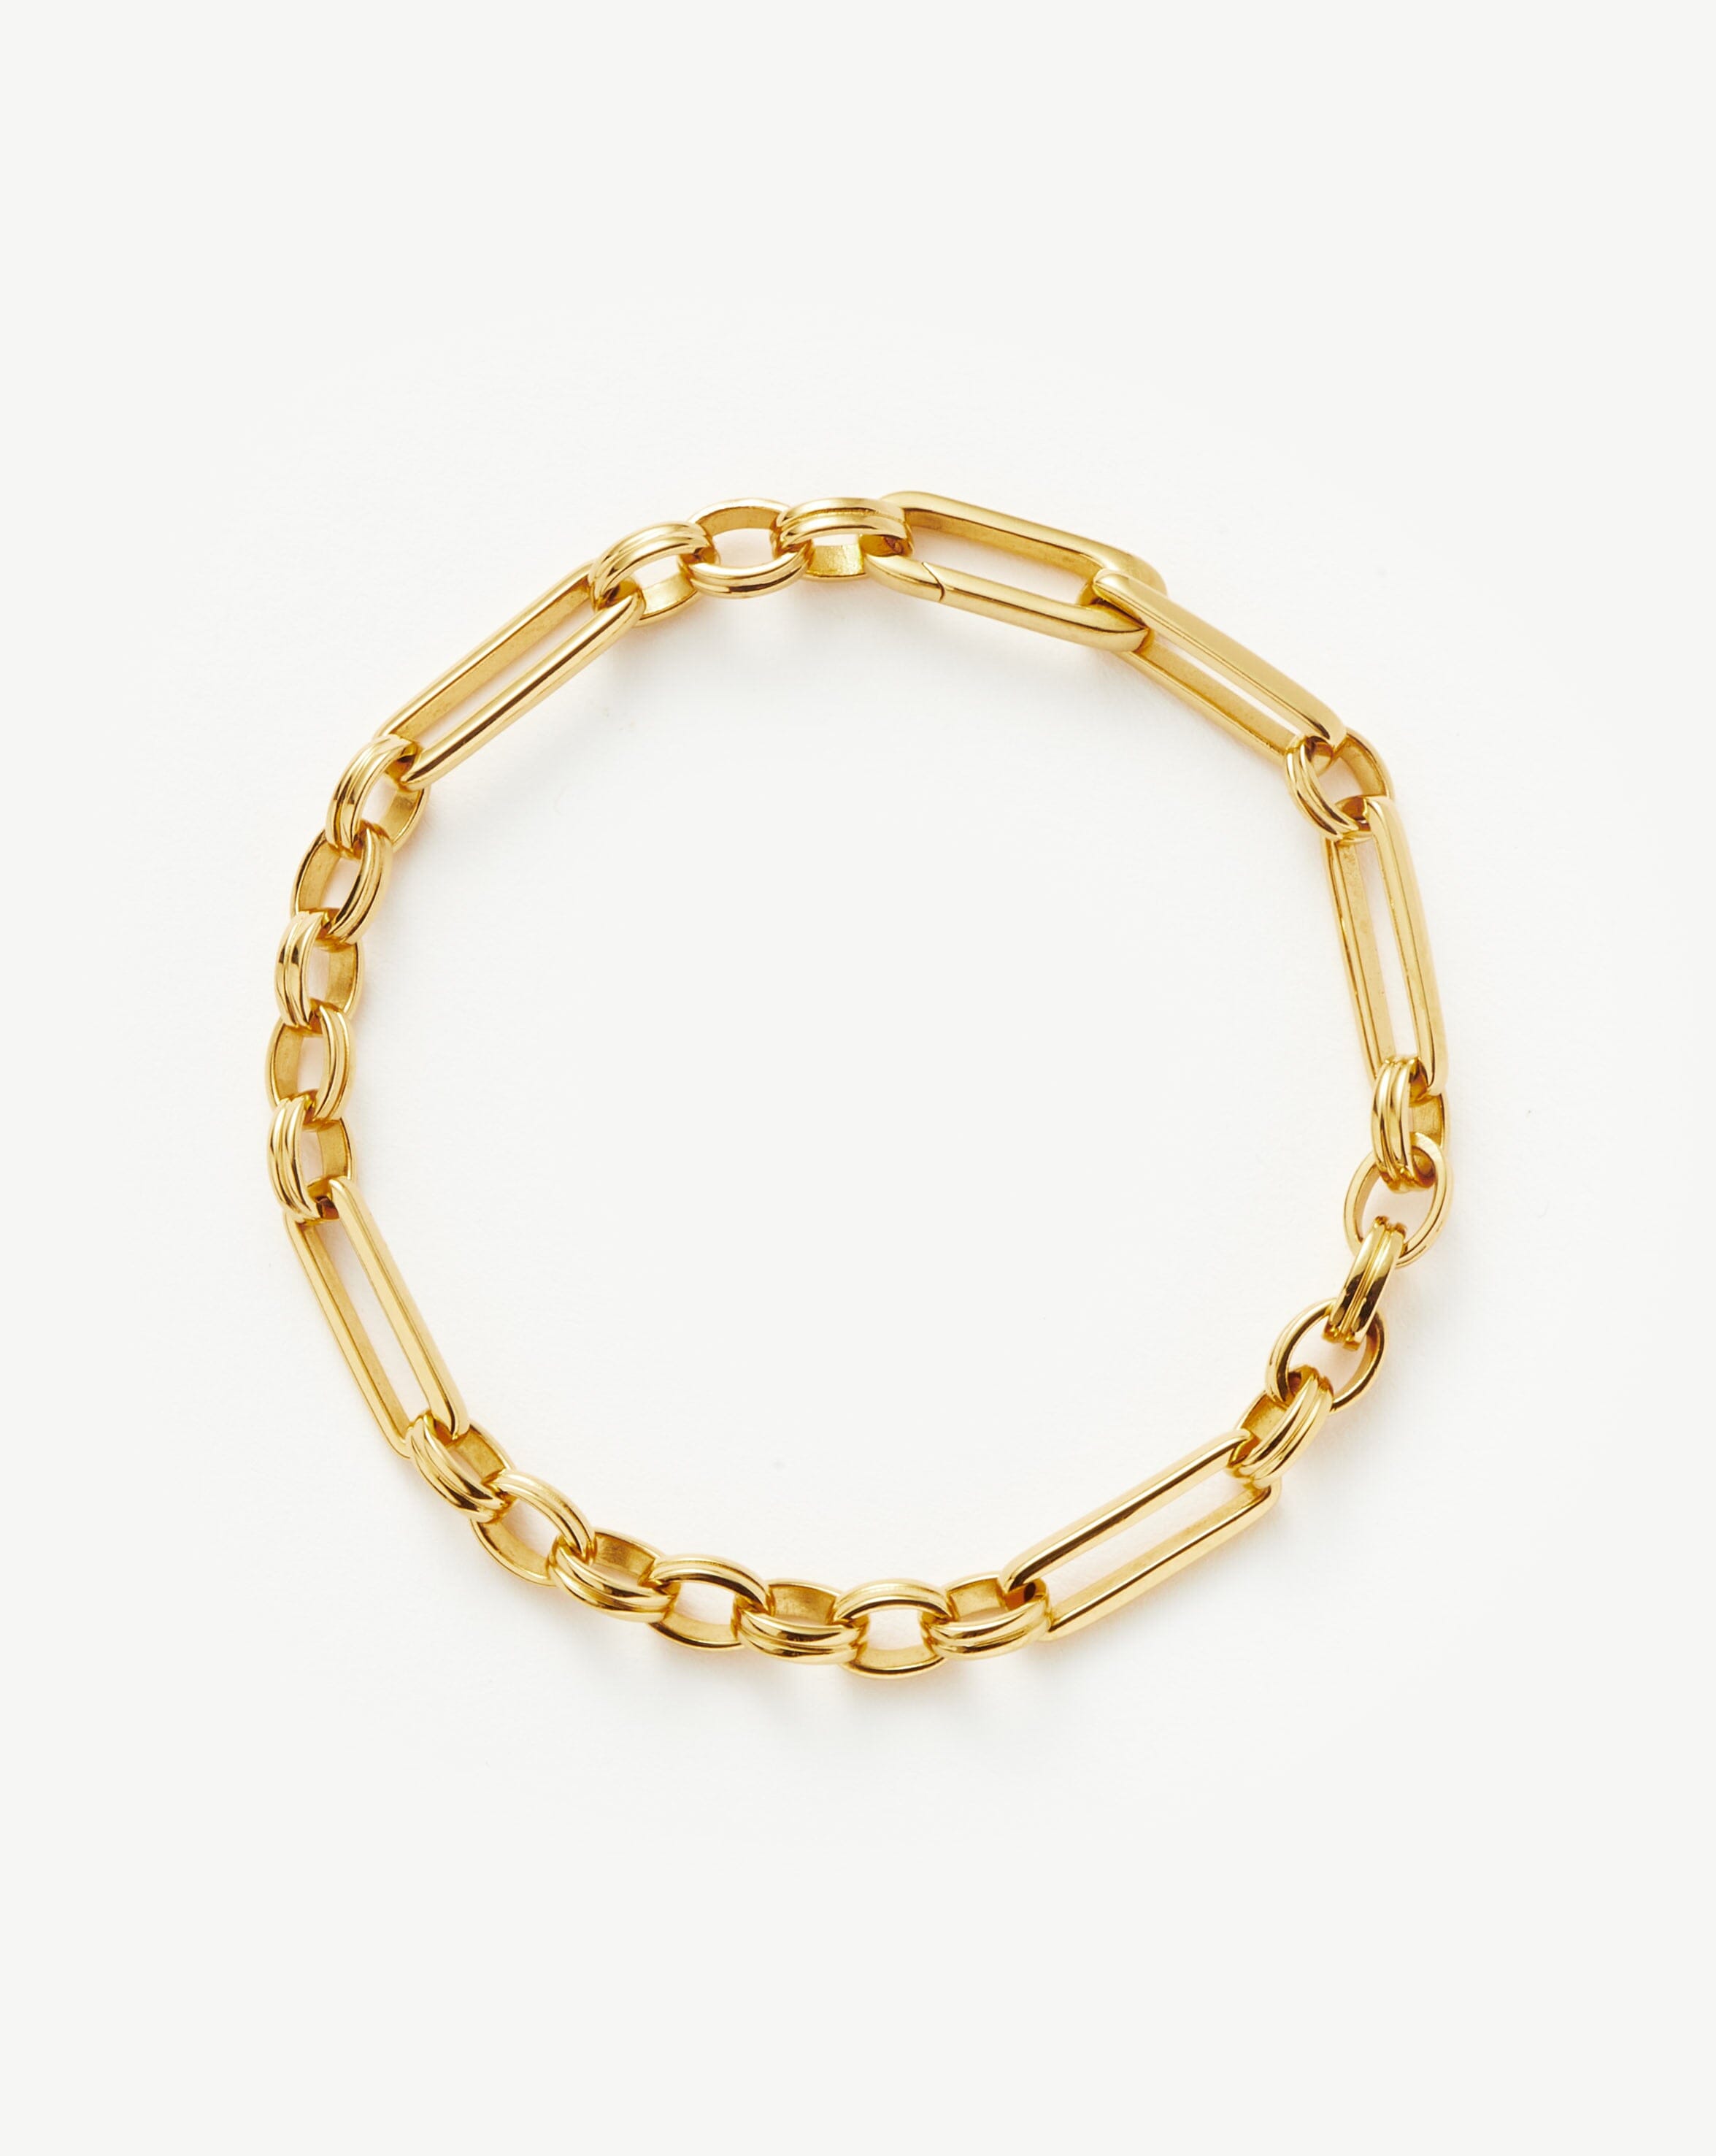 Stack Bracelet, Gold Filled Bracelet, Gold Chain Bracelet, Chunky Paperclip  Bracelet, Gold Link Bracelet, Gold Snake Bracelet, Bracelet Set 